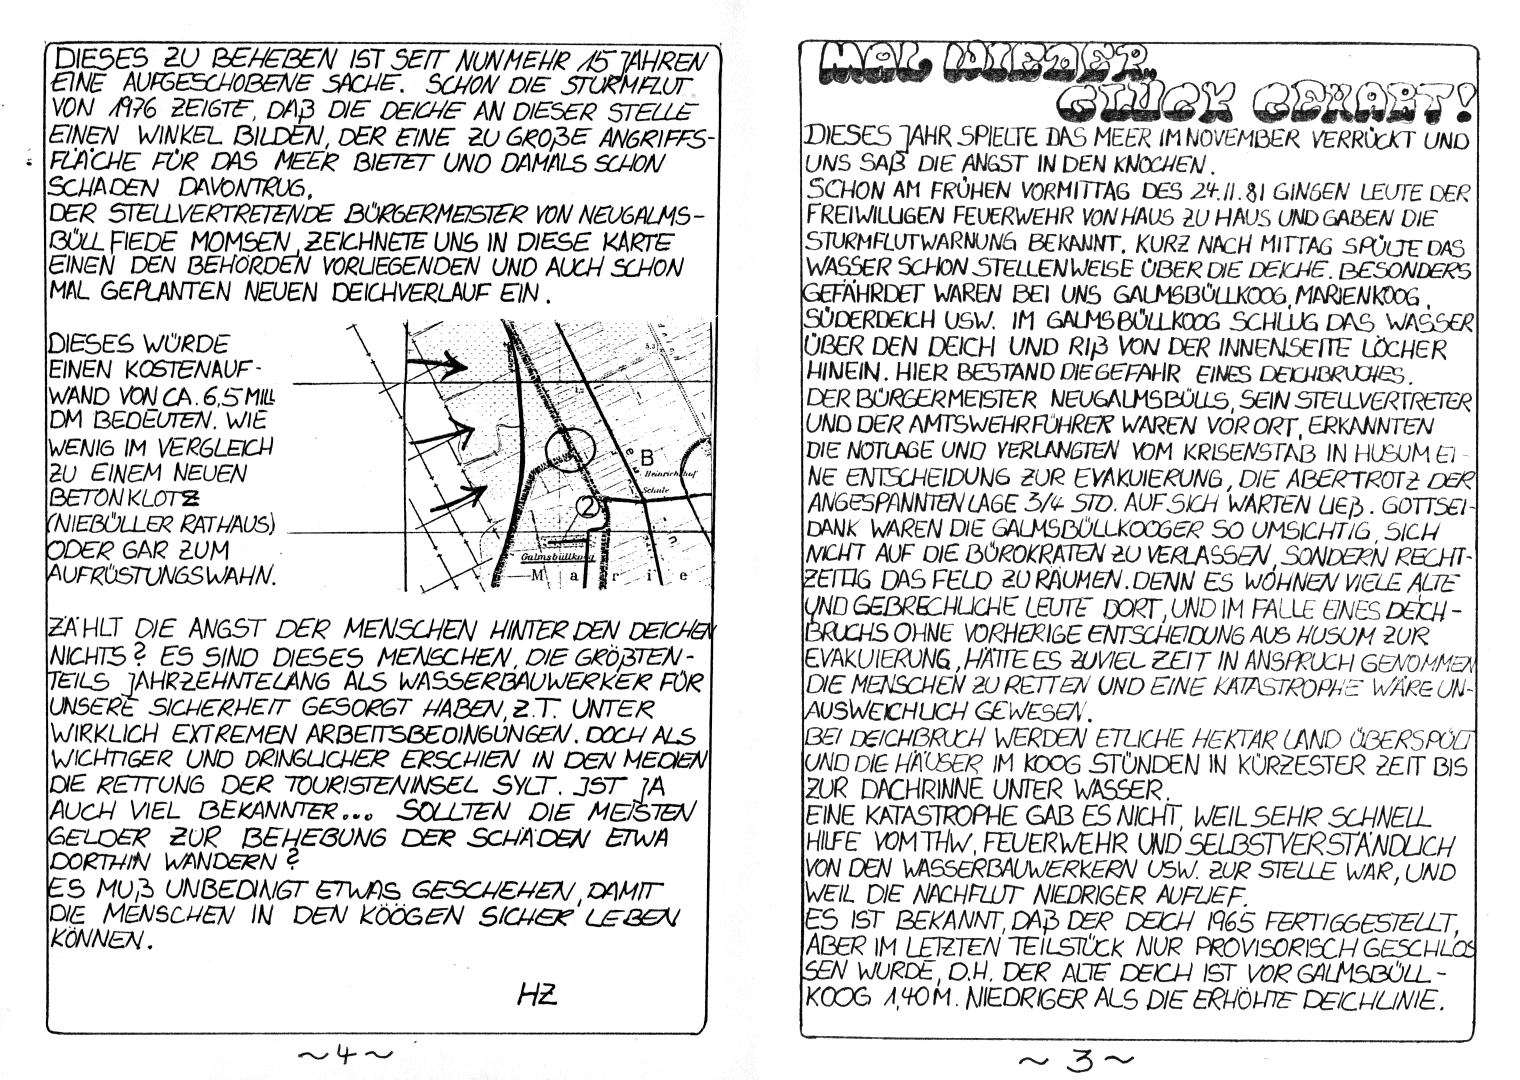 HZ 8 - Seite 4 und 5